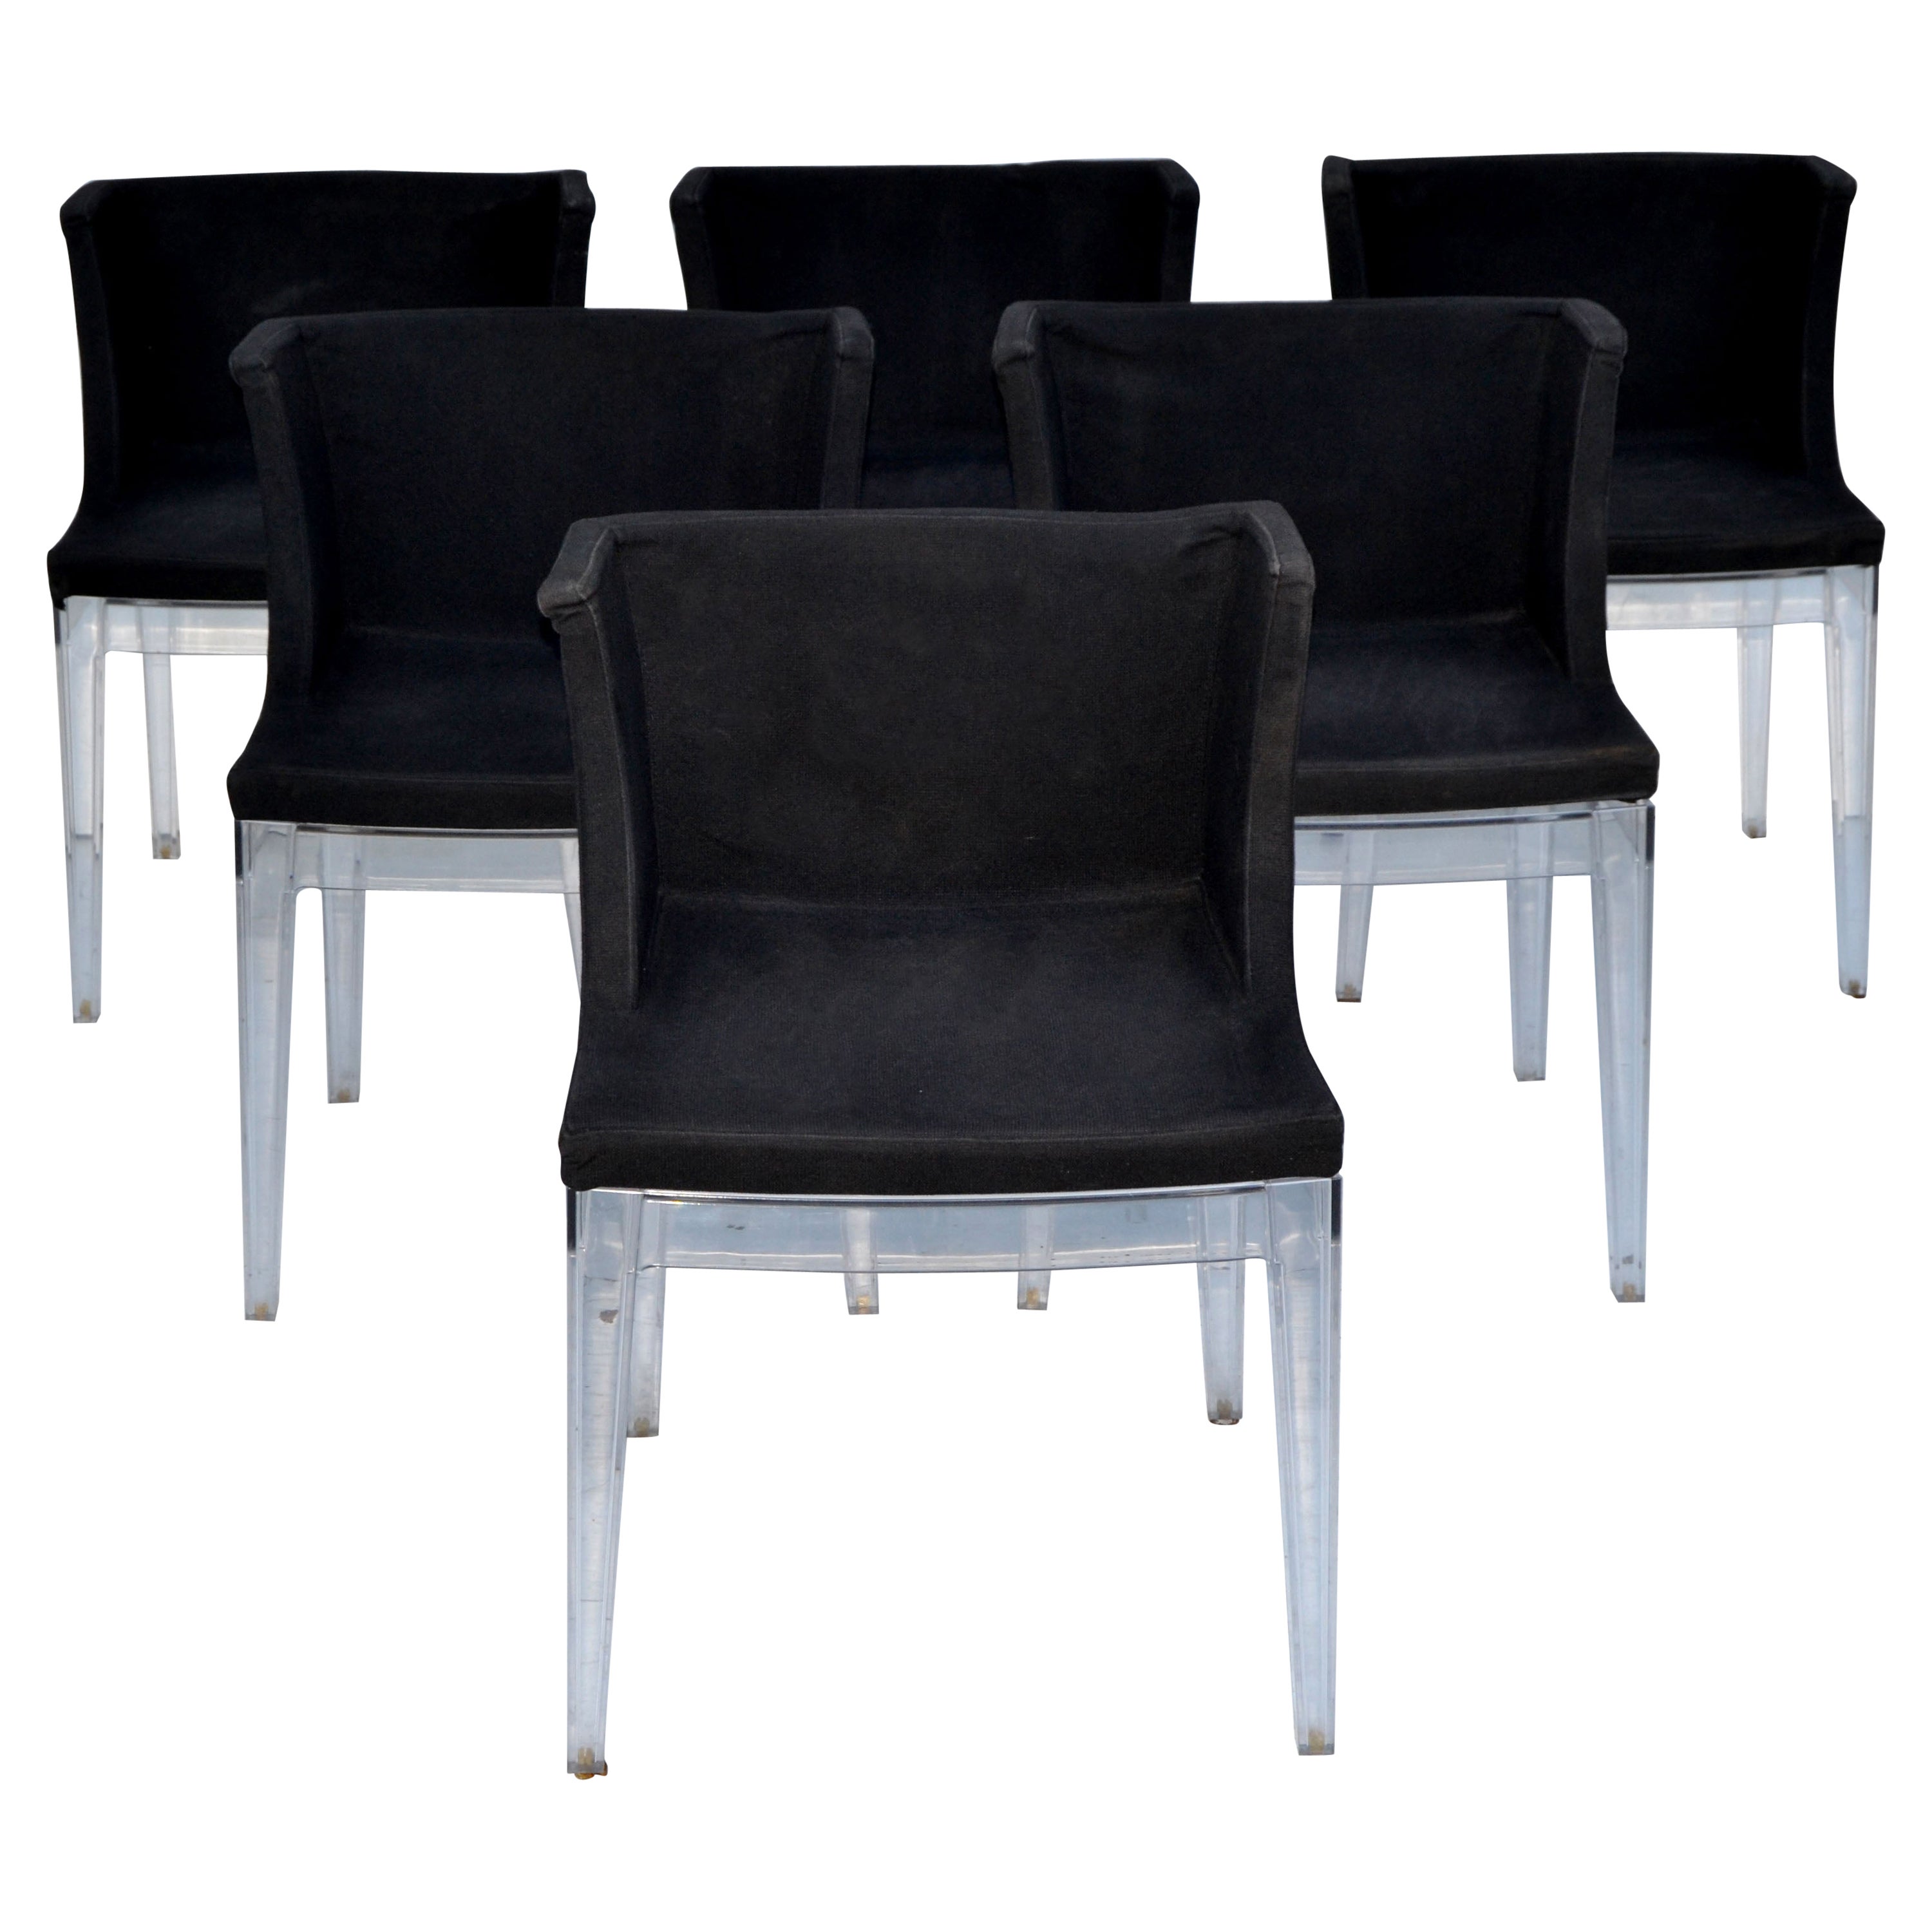 6 Kartell Italy Mademoiselle-Stühle von Philippe Starck aus schwarzem Lucite-Stoff